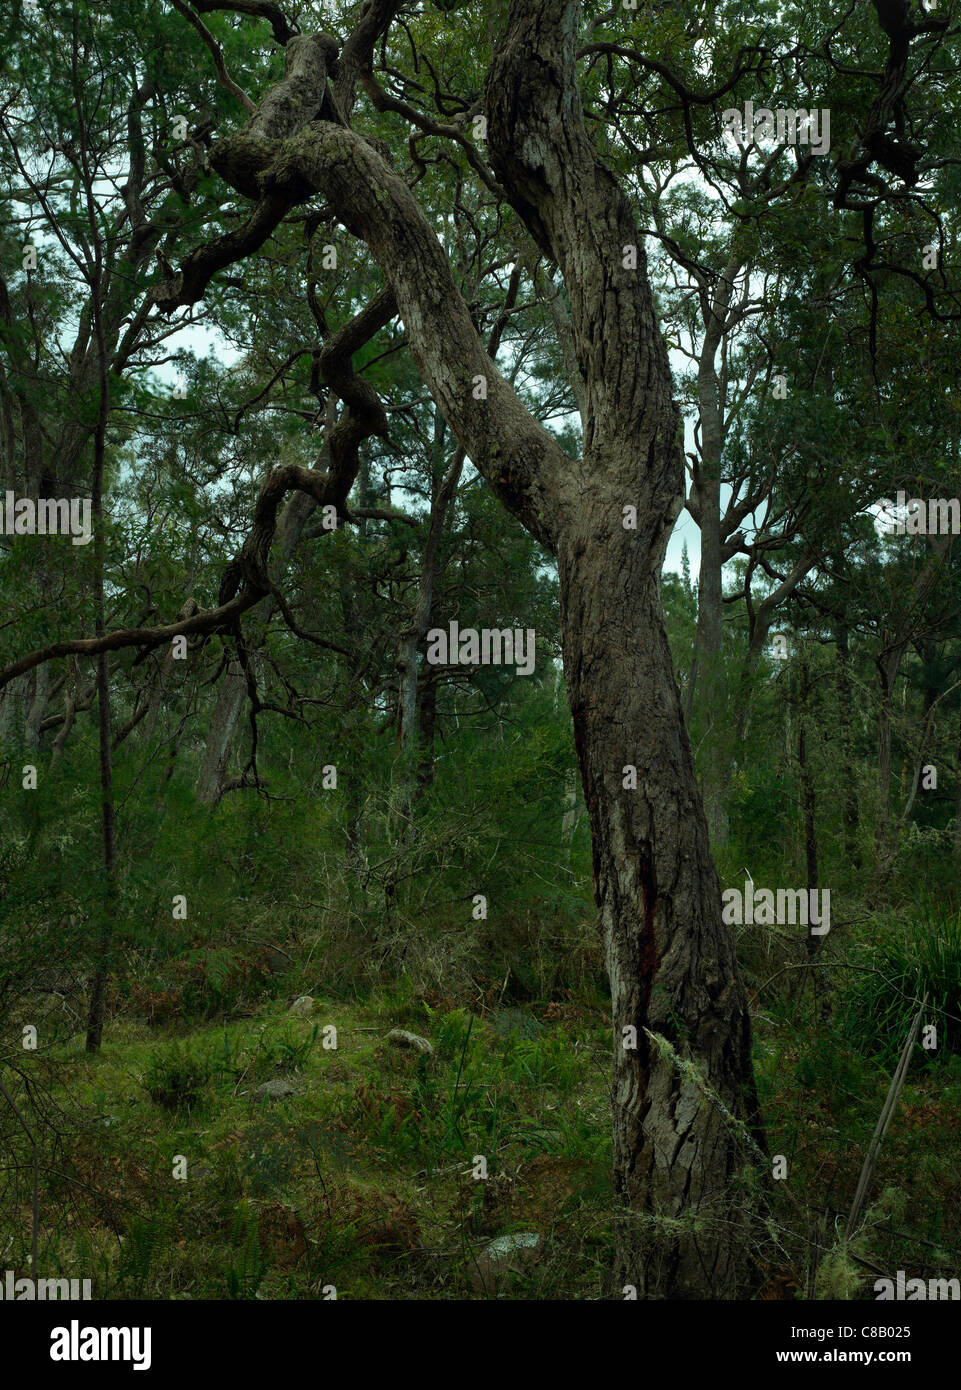 Arbre d'eucalyptus dans le parc national de Wadbilliga, NSW Australie Banque D'Images